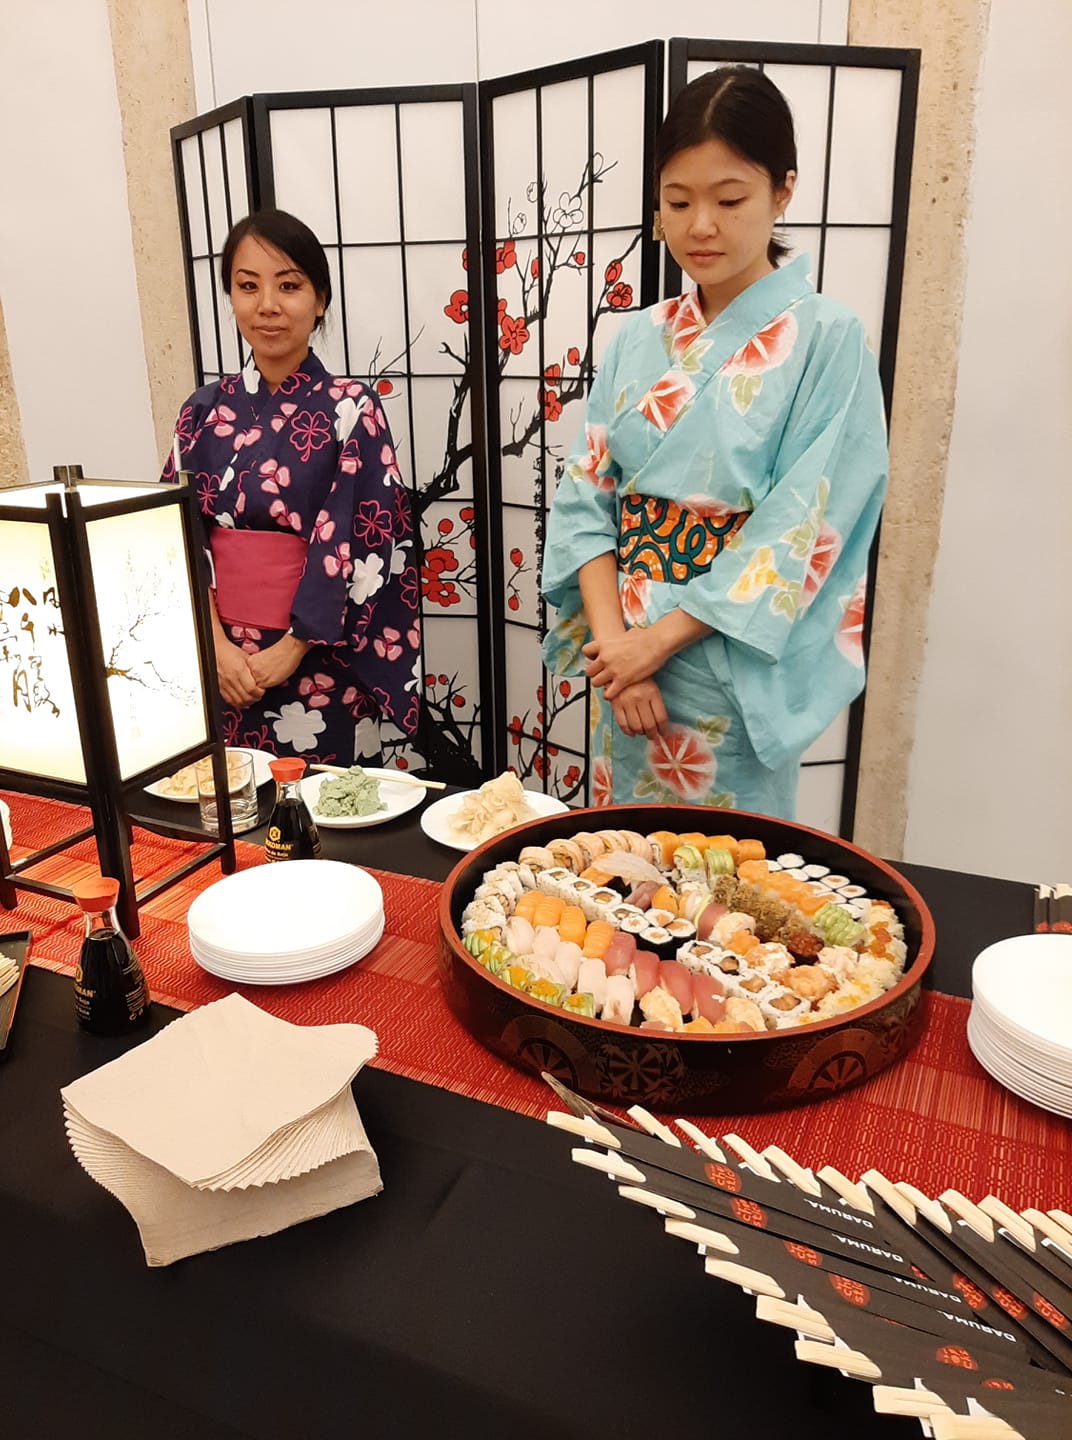 “Dieta giapponese e prevenzione oncologica” - Un convegno dedicato alla cucina giapponese e ai suoi effetti benefici.